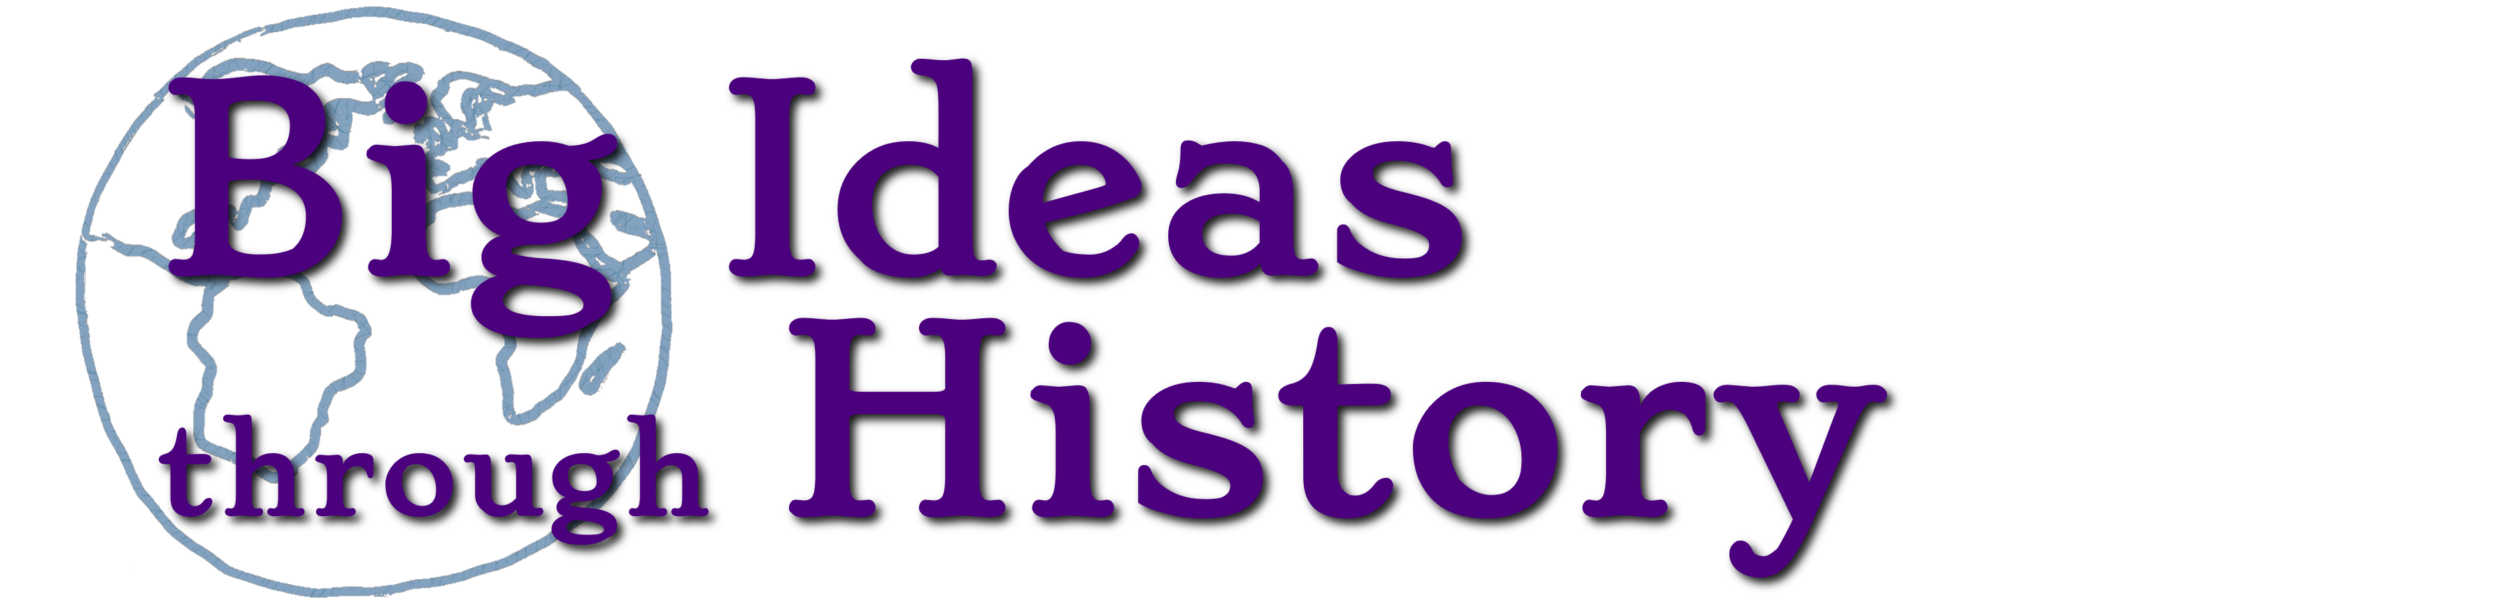 Big Ideas through History